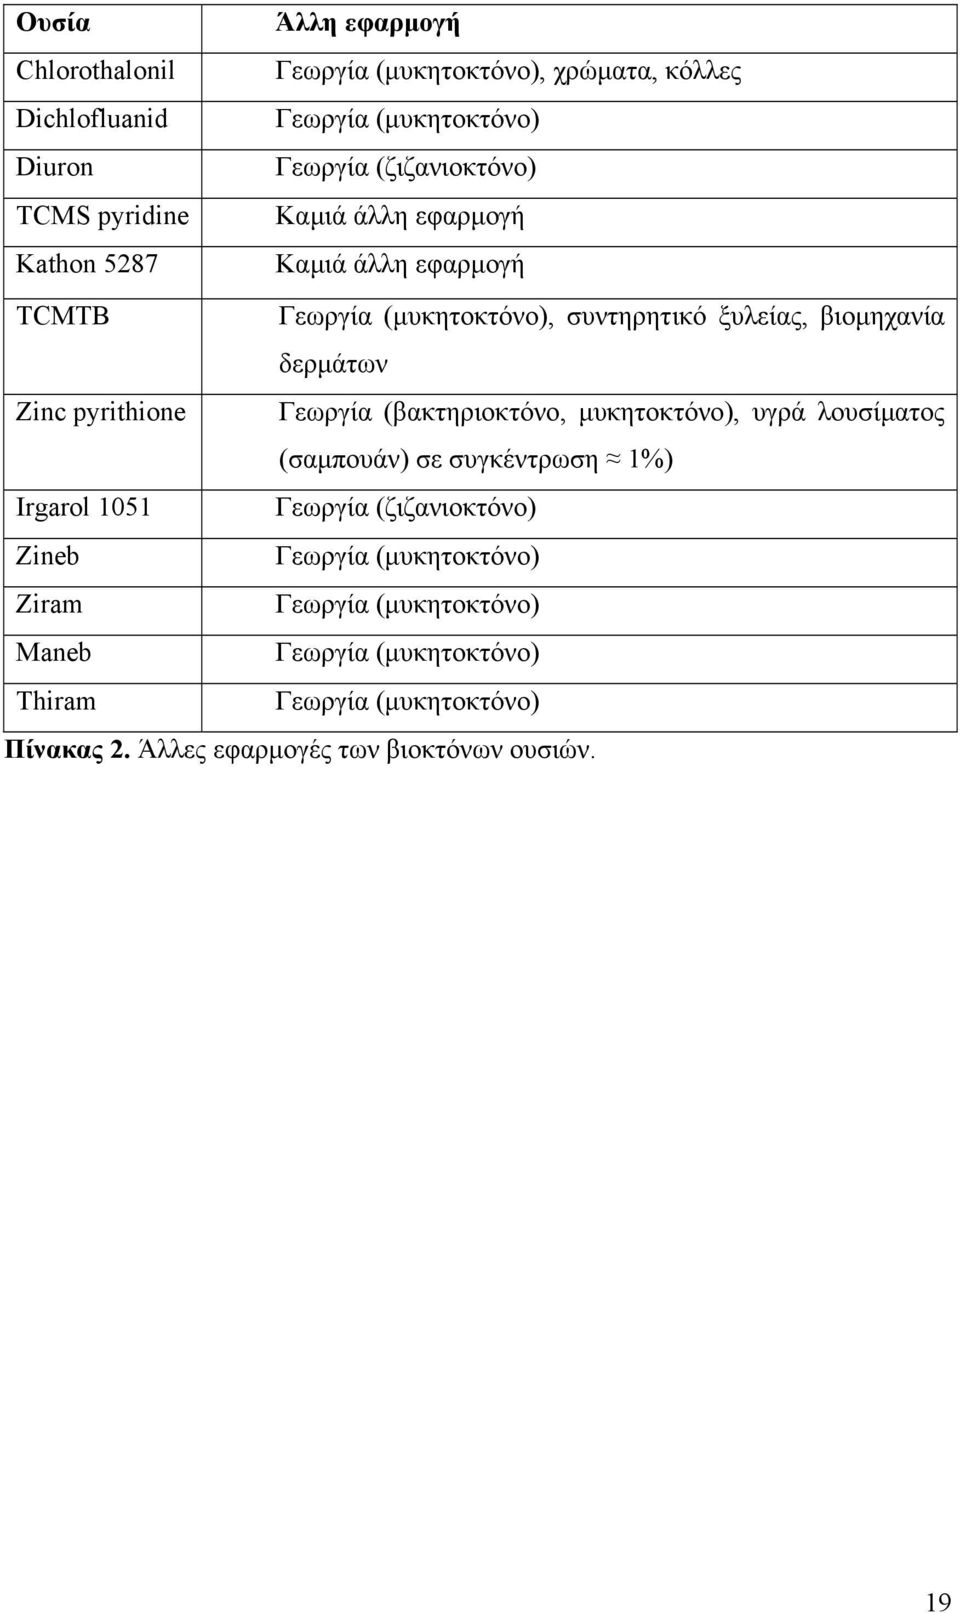 pyrithione Γεωργία (βακτηριοκτόνο, µυκητοκτόνο), υγρά λουσίµατος (σαµπουάν) σε συγκέντρωση 1%) Irgarol 1051 Γεωργία (ζιζανιοκτόνο) Zineb